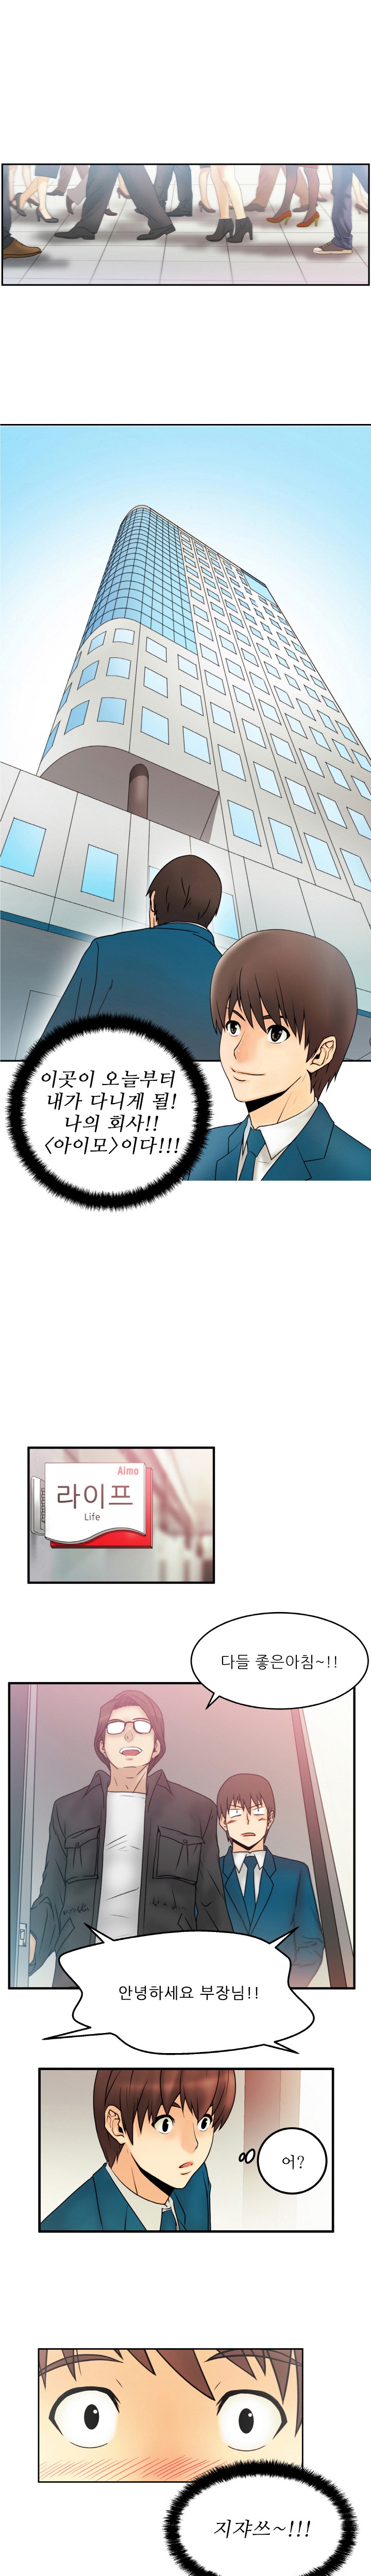 [Minu Mindu] Office Lady Vol. 1 [Korean] 2